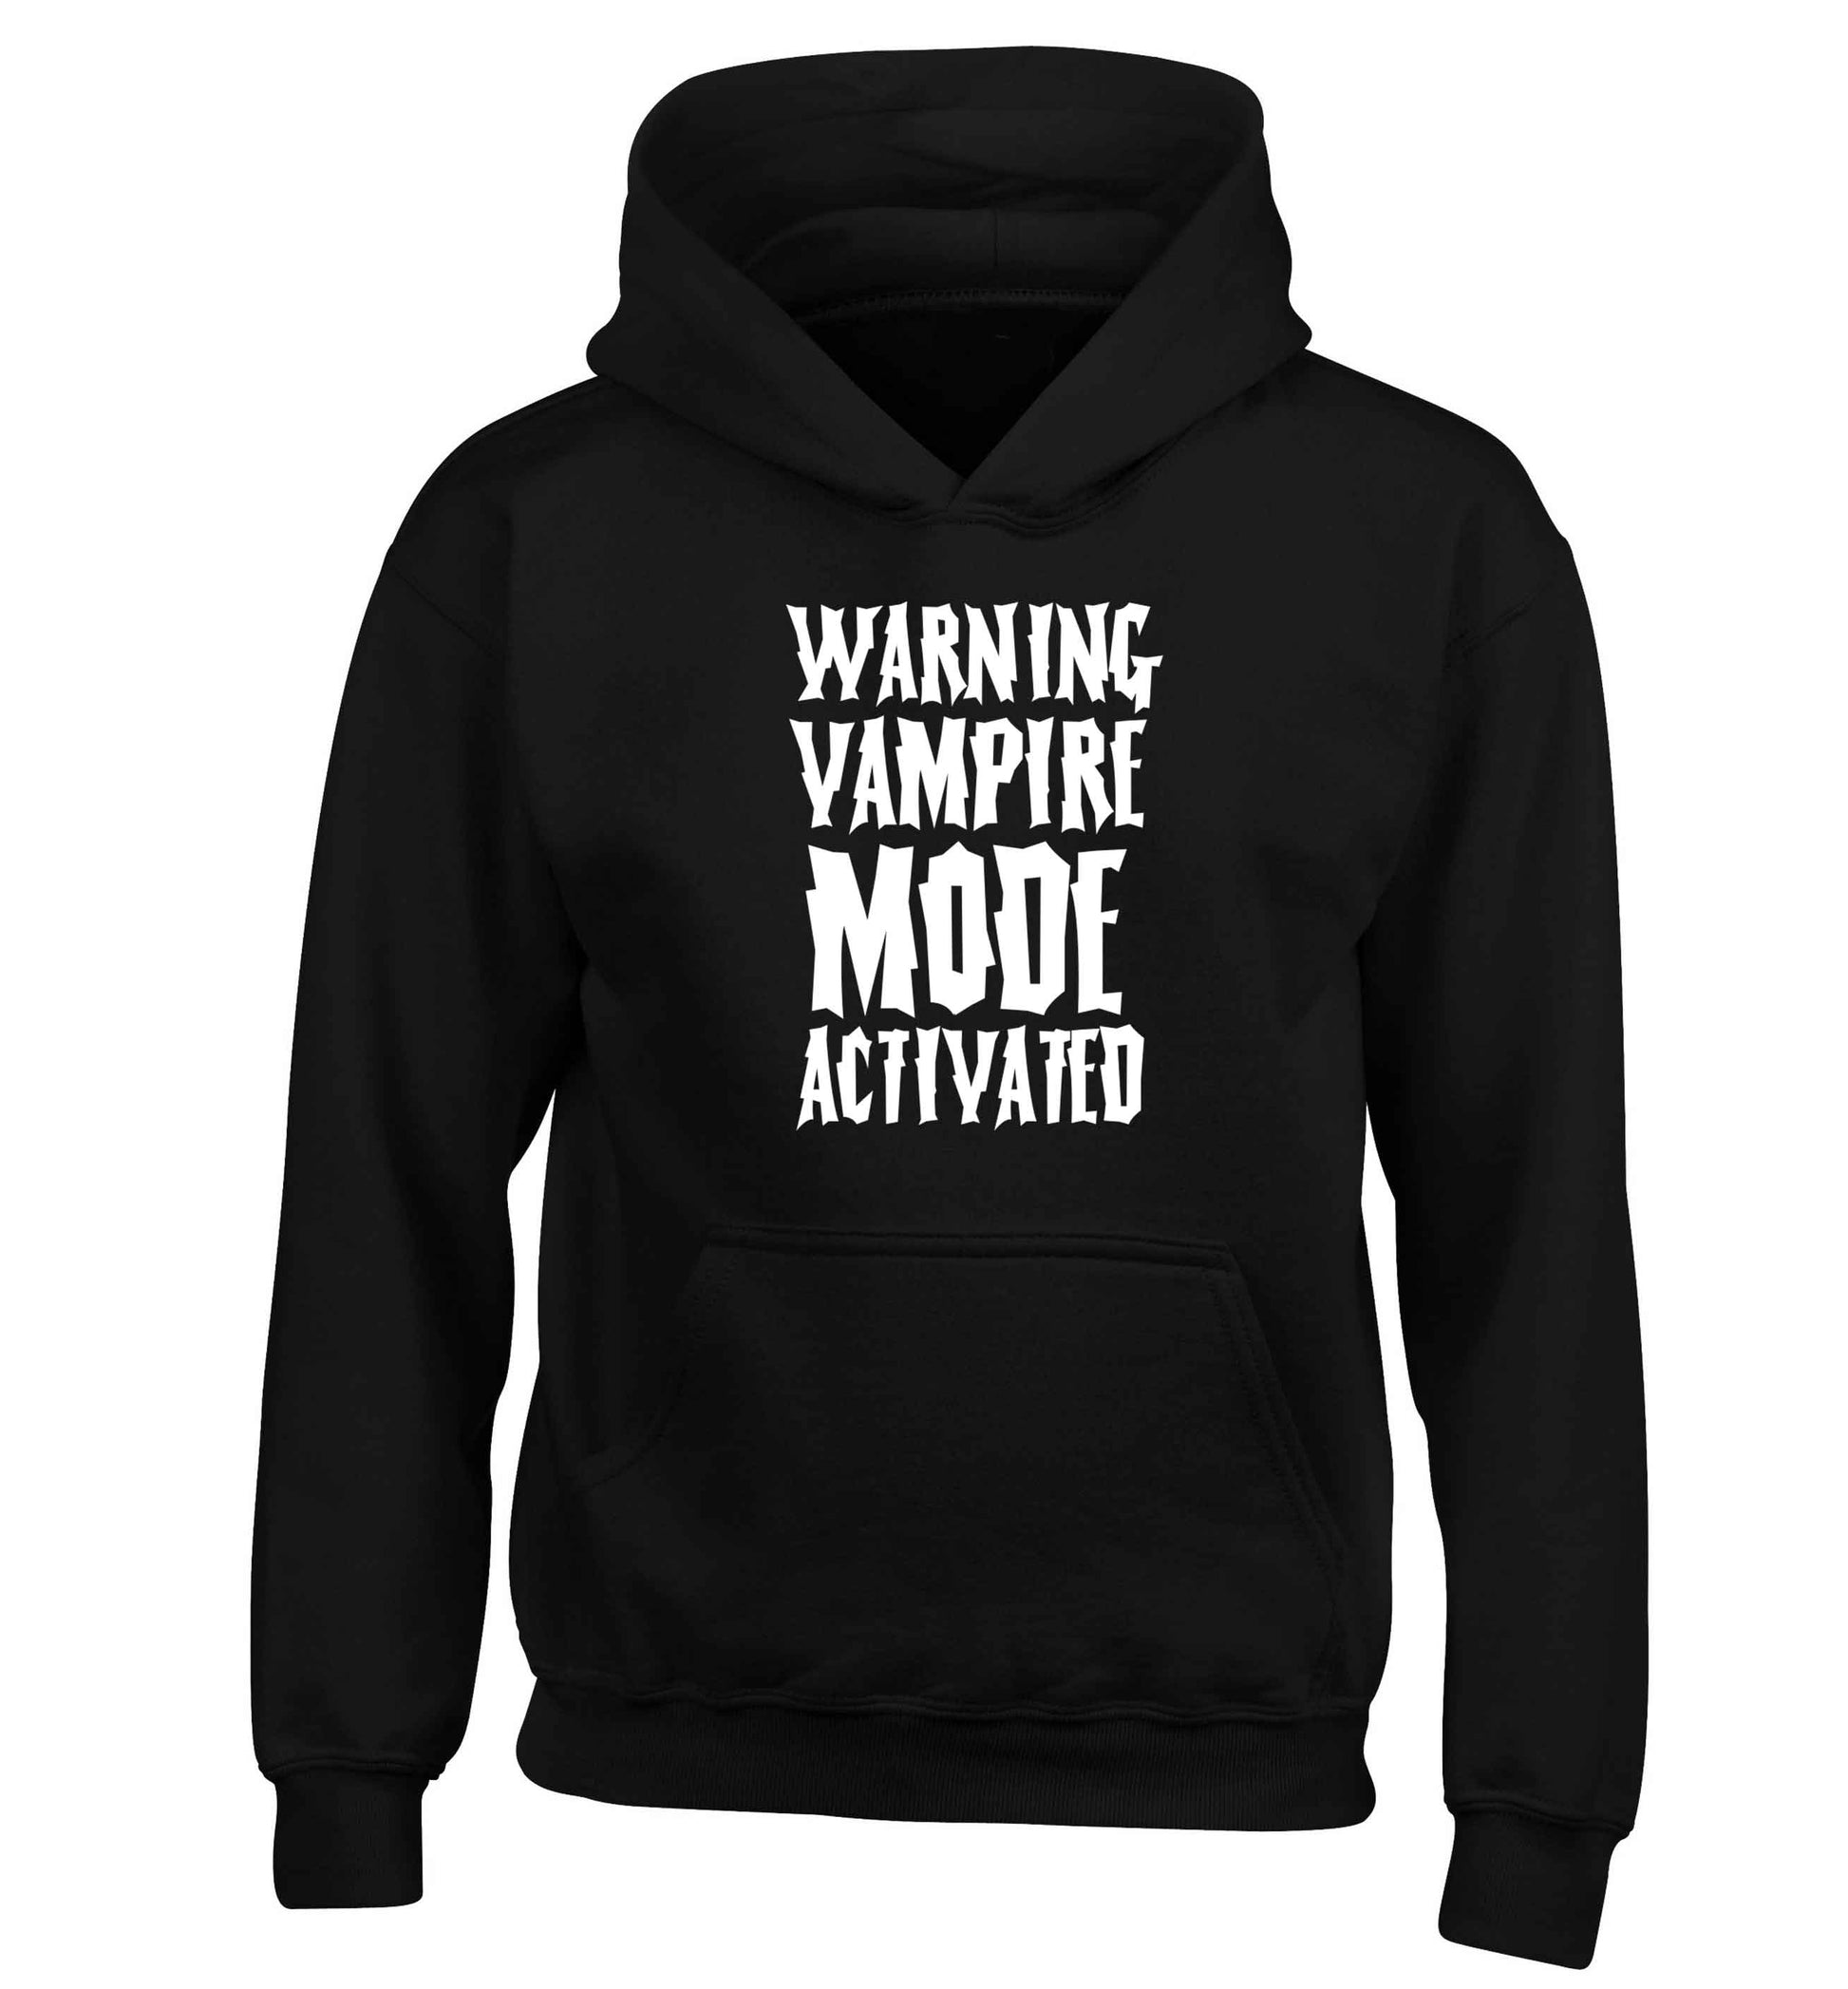 Warning vampire mode activated children's black hoodie 12-13 Years